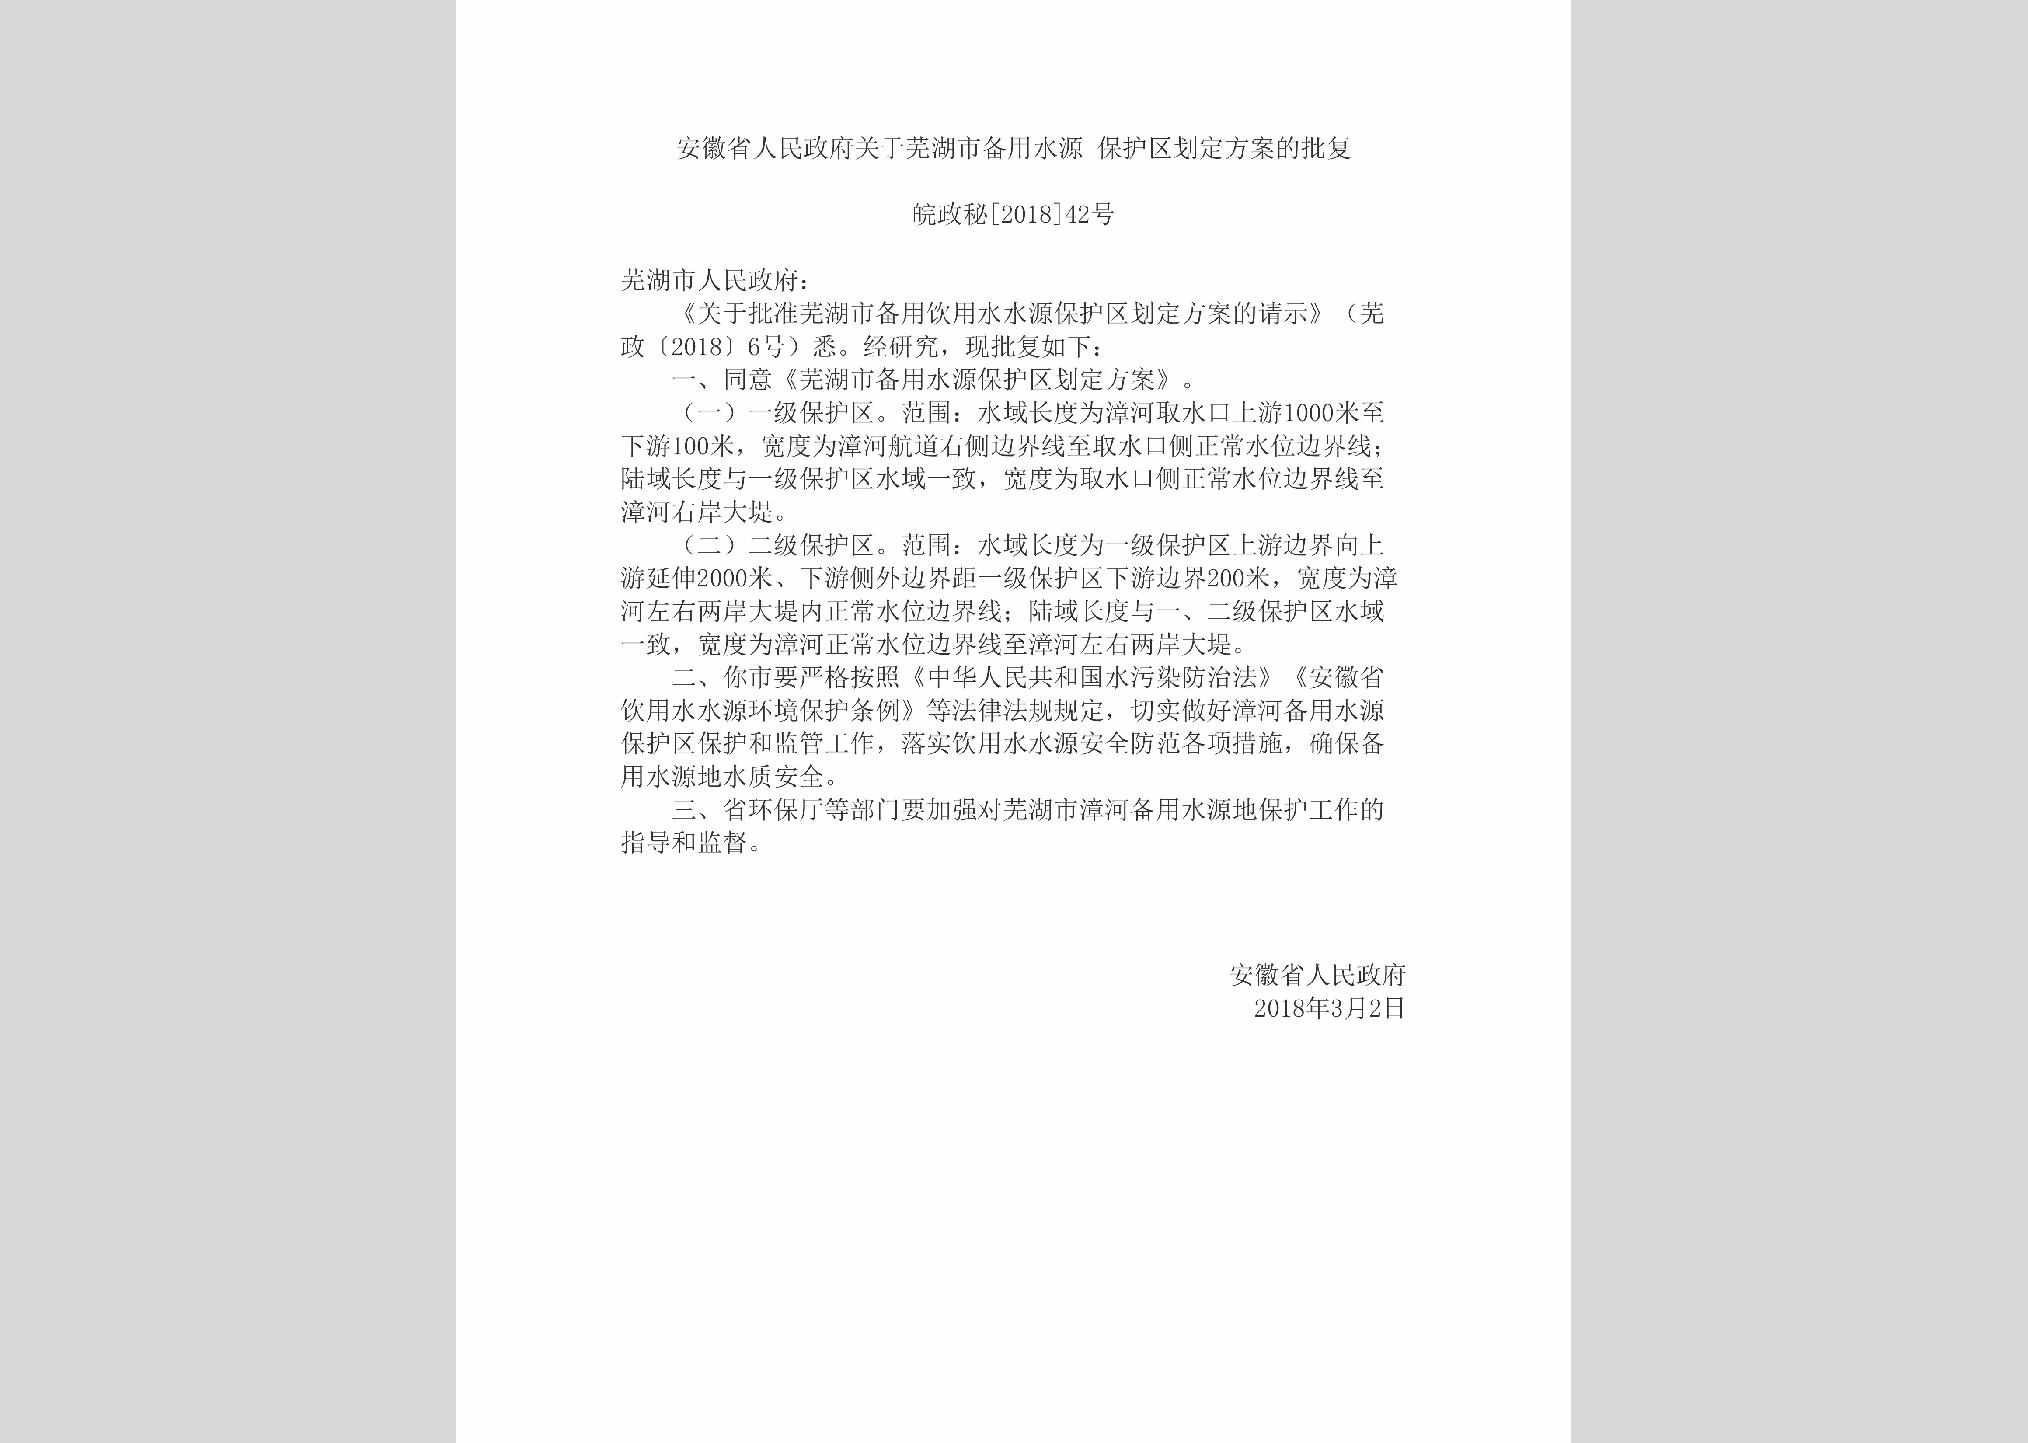 皖政秘[2018]42号：安徽省人民政府关于芜湖市备用水源保护区划定方案的批复